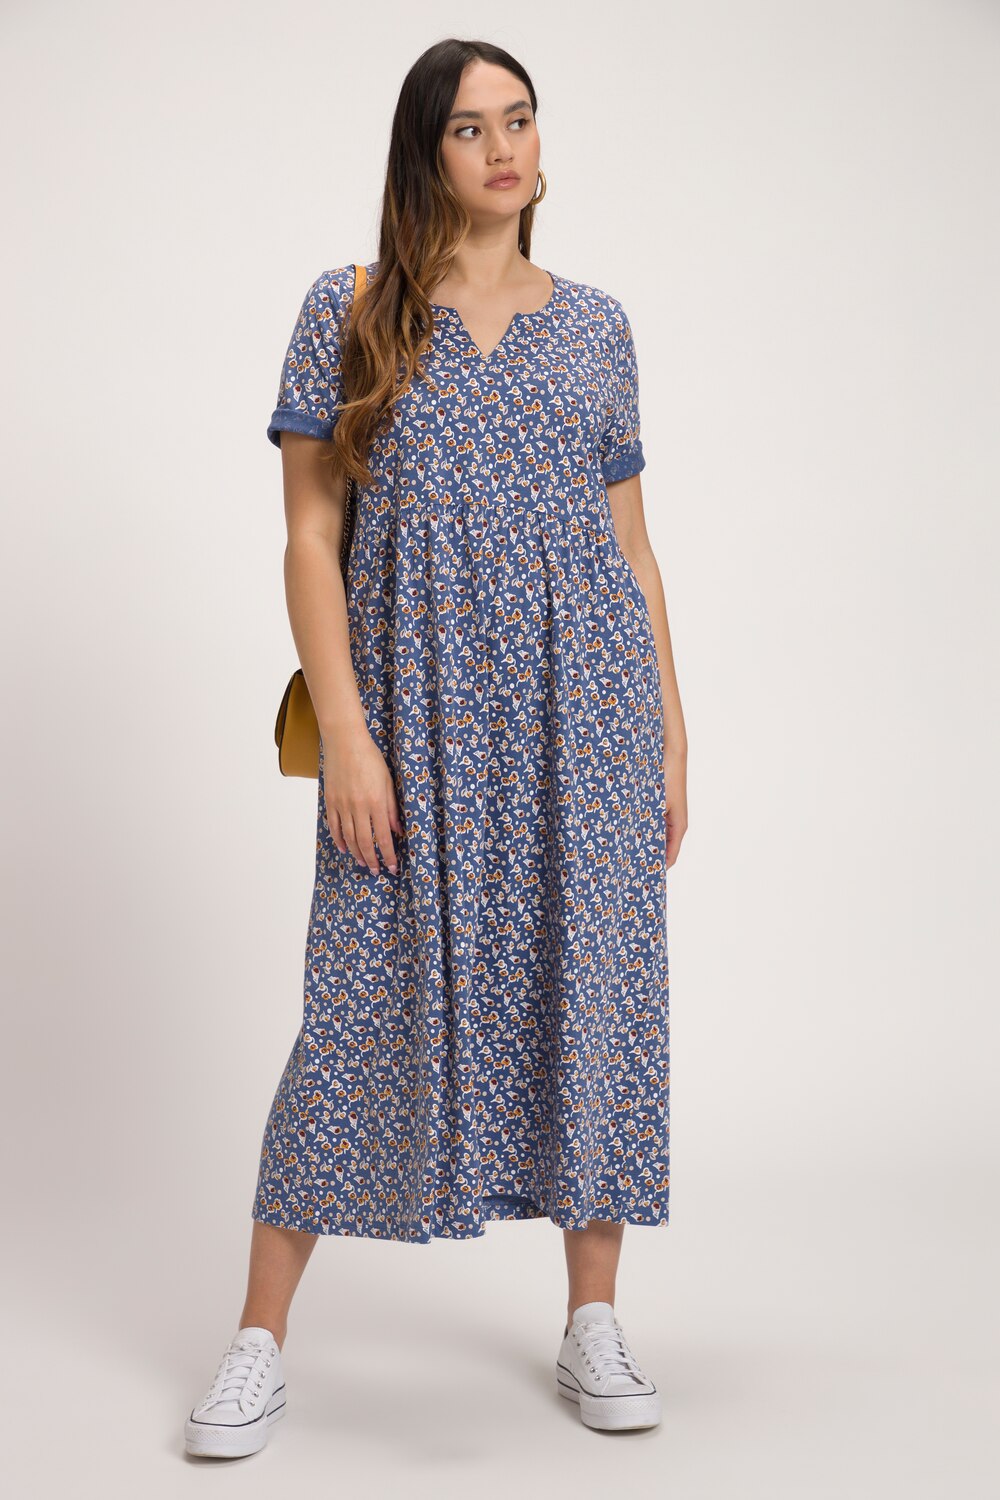 Plus Size Petite Rose Print Notch Neck Long Cotton Knit Dress, Woman, blue, size: 20/22, cotton, Ulla Popken